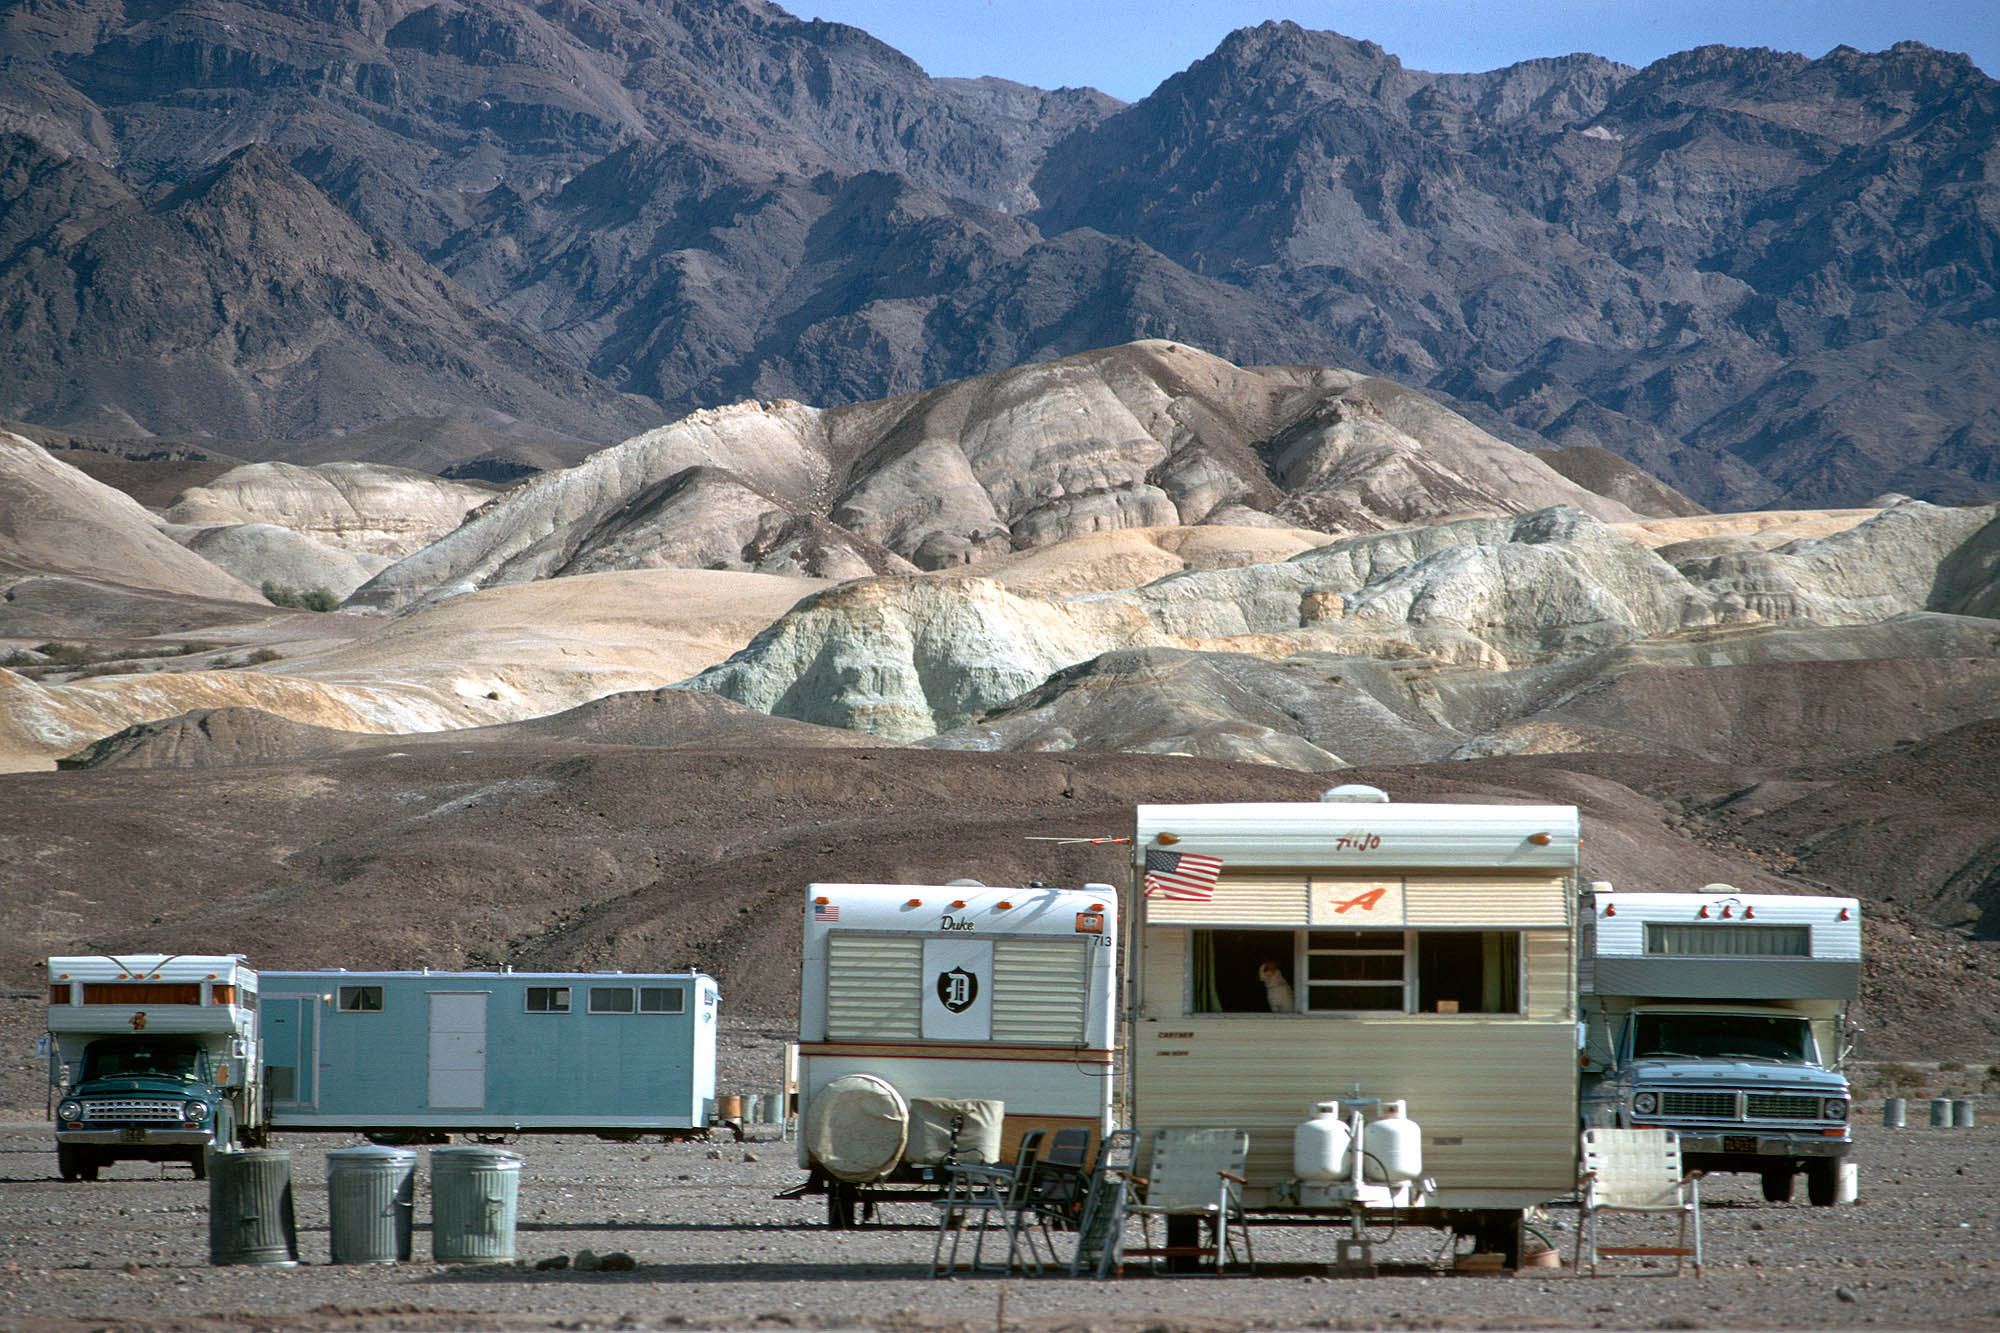 bill-hocker-desert-camping-death-valley-california-1974